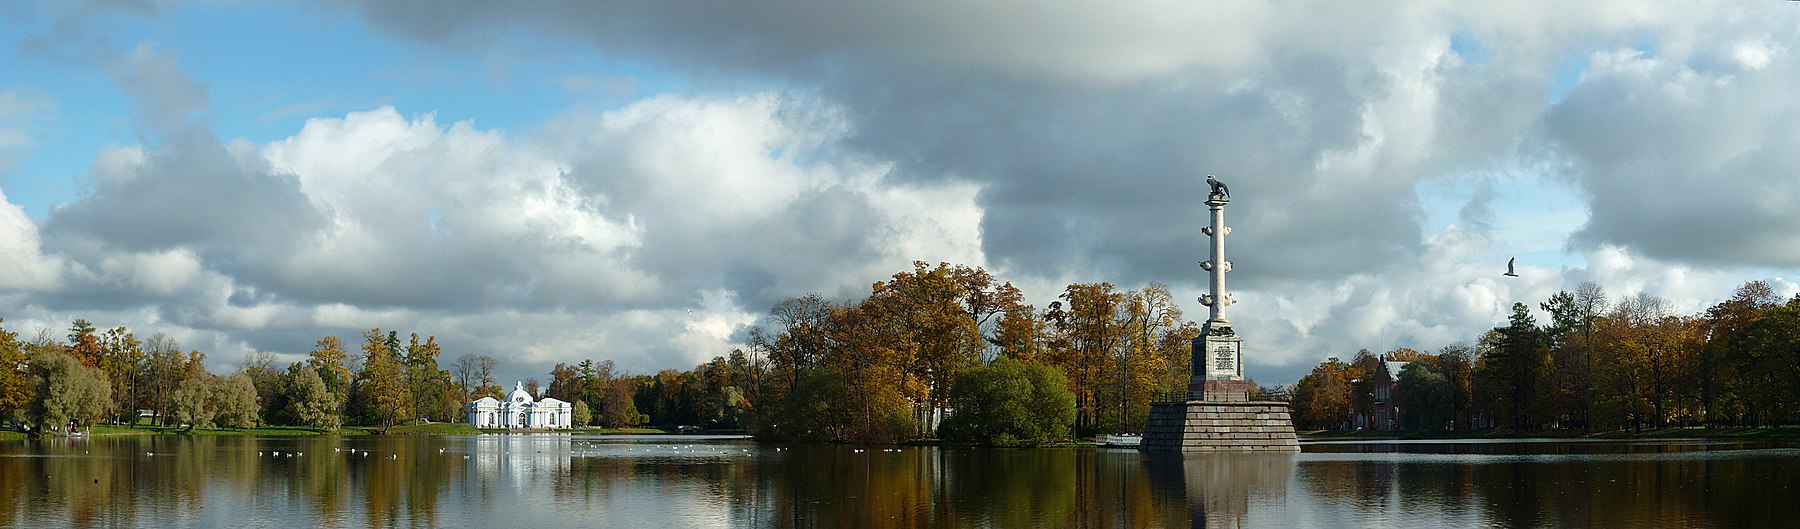 Большой пруд, Екатерининский парк, город Пушкин, фото участника Utro boyarskogo, лицензия CC BY-SA 3.0